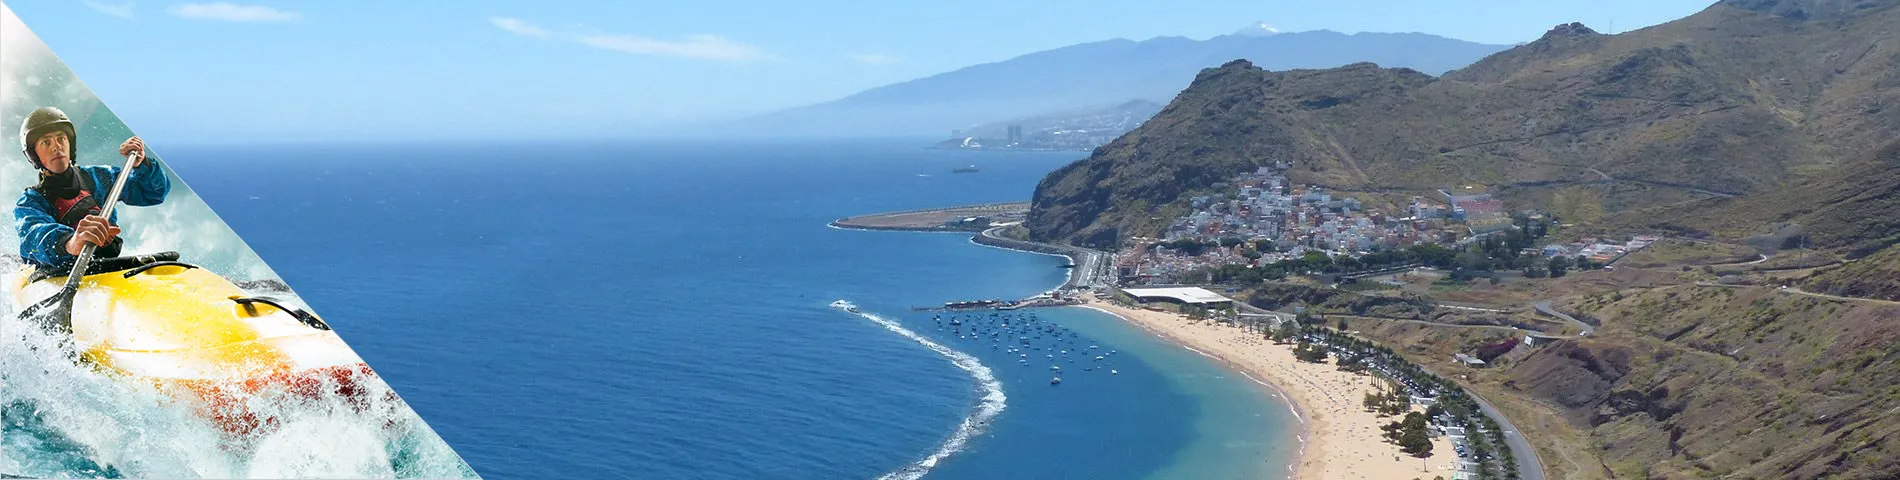 Tenerife - Španělština a Dobrodružné sporty